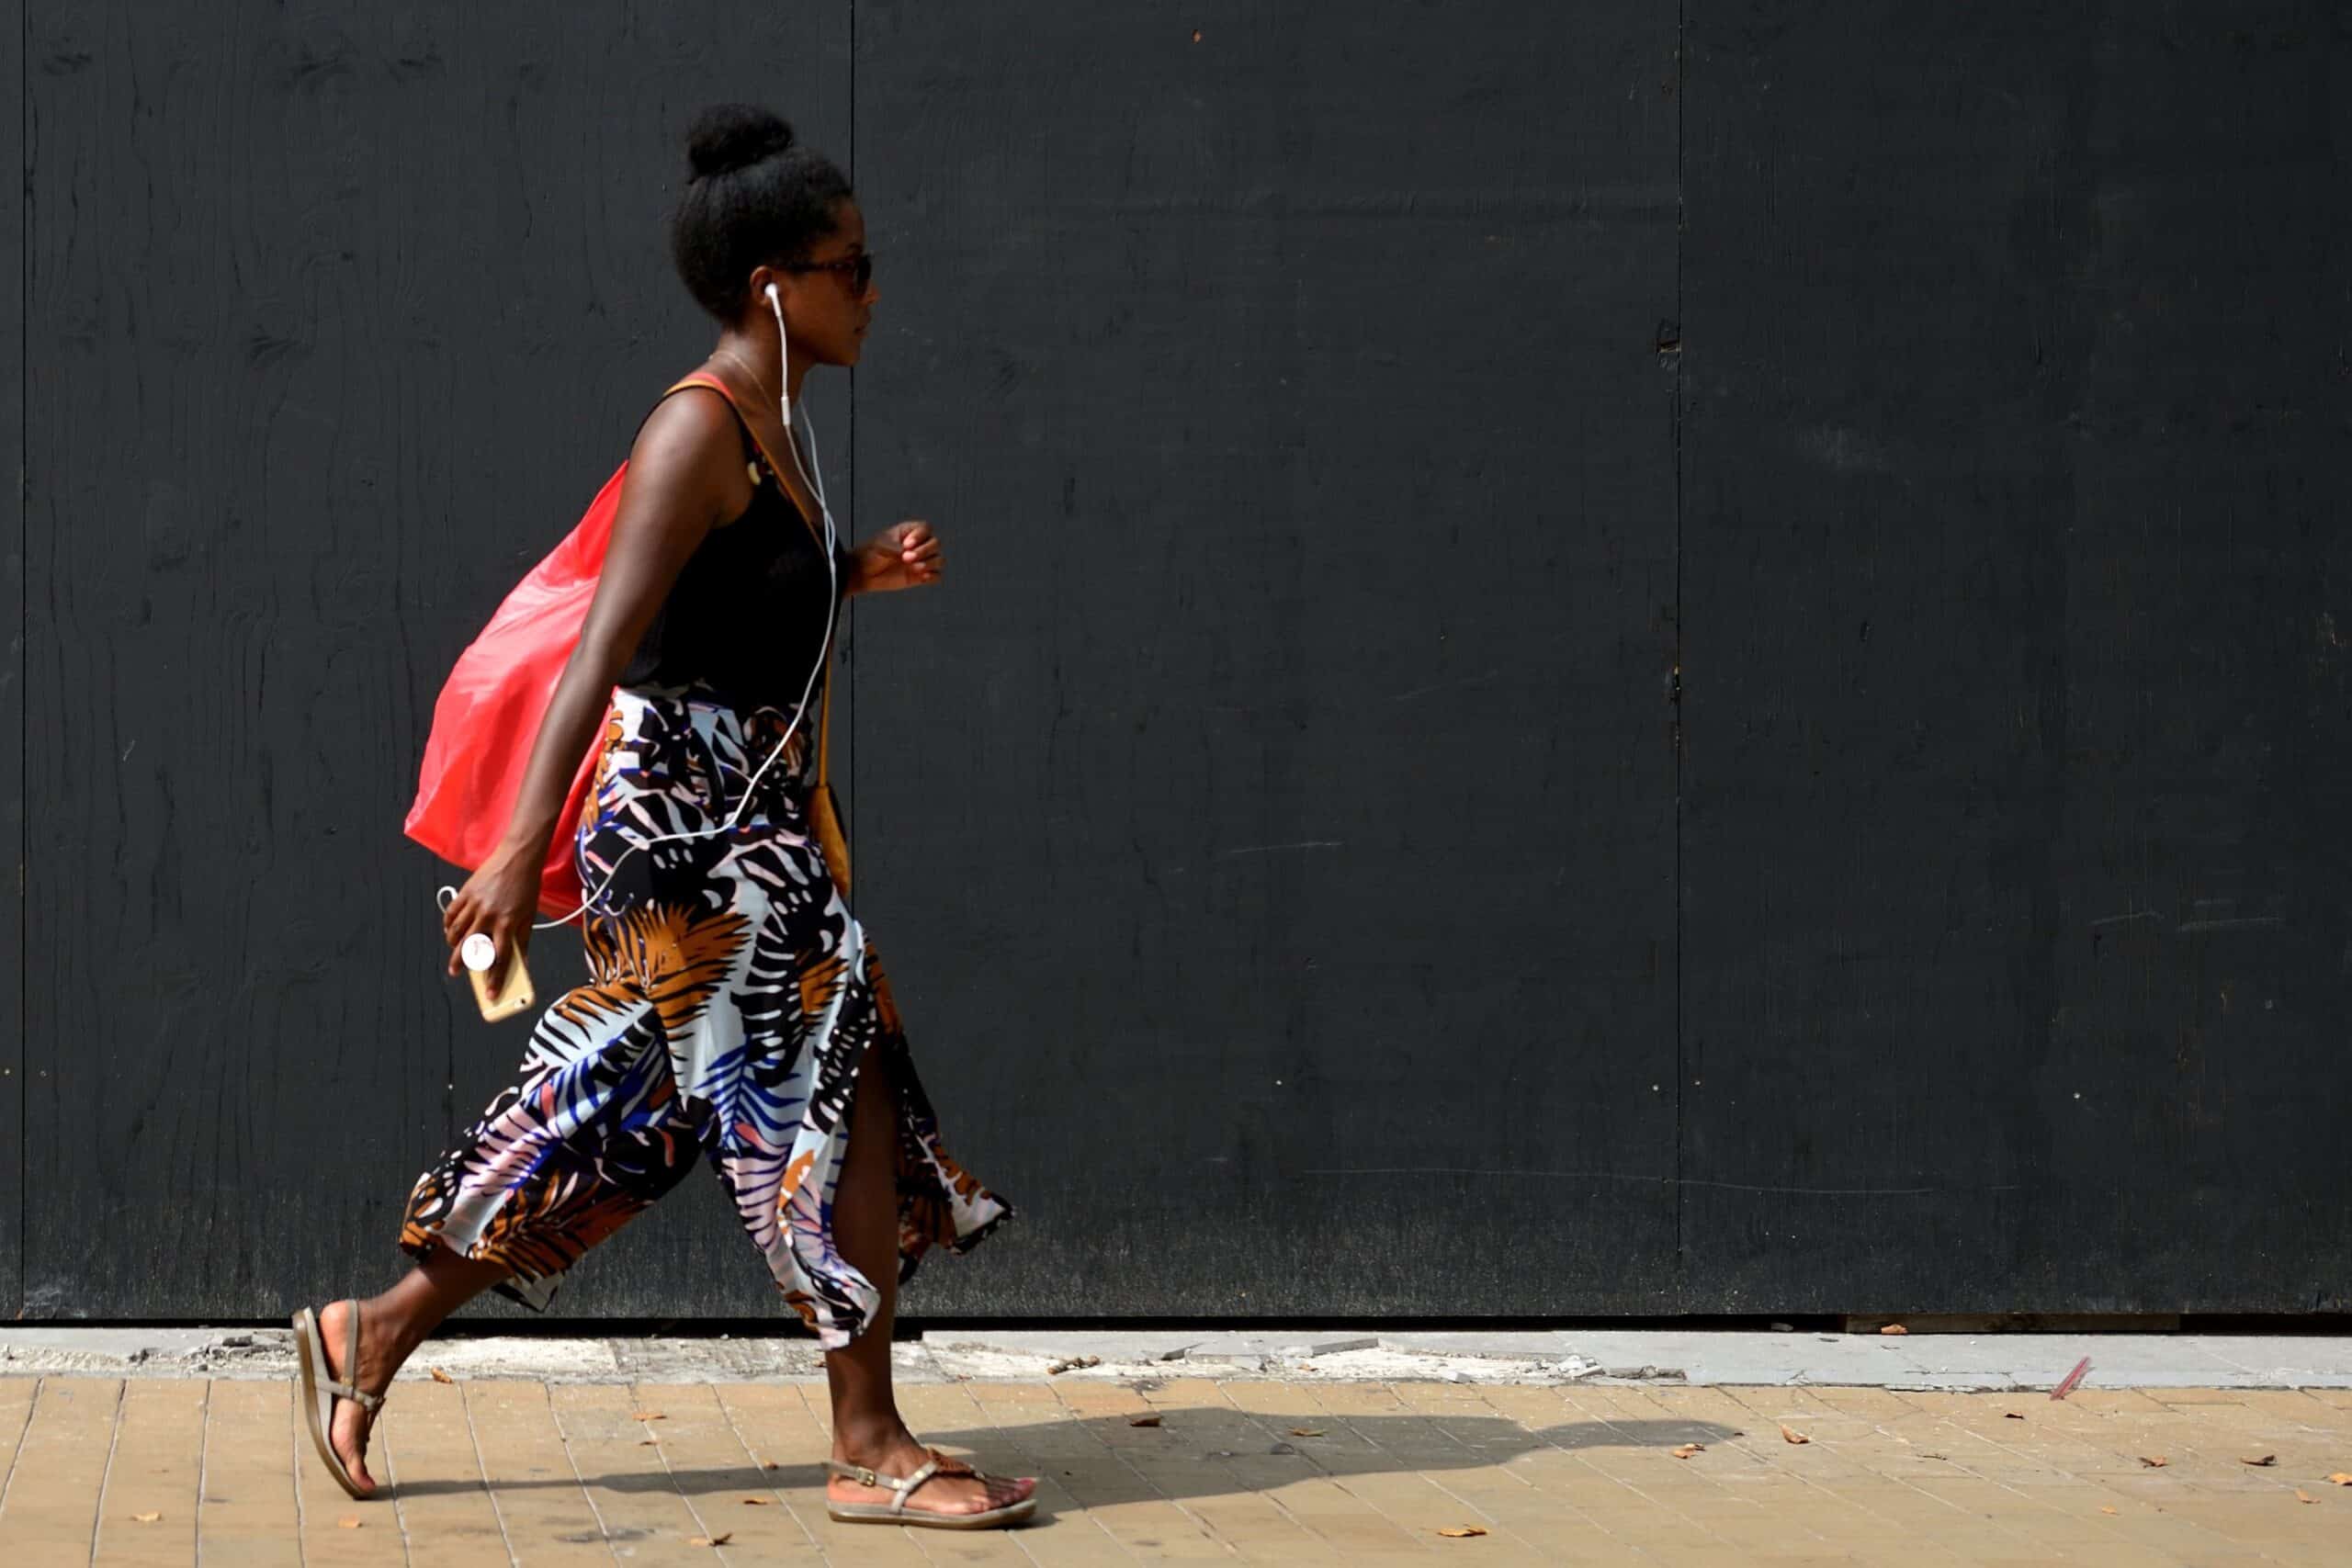 Vrouw loopt voor donkere wand tijdens workshop straatfotografie